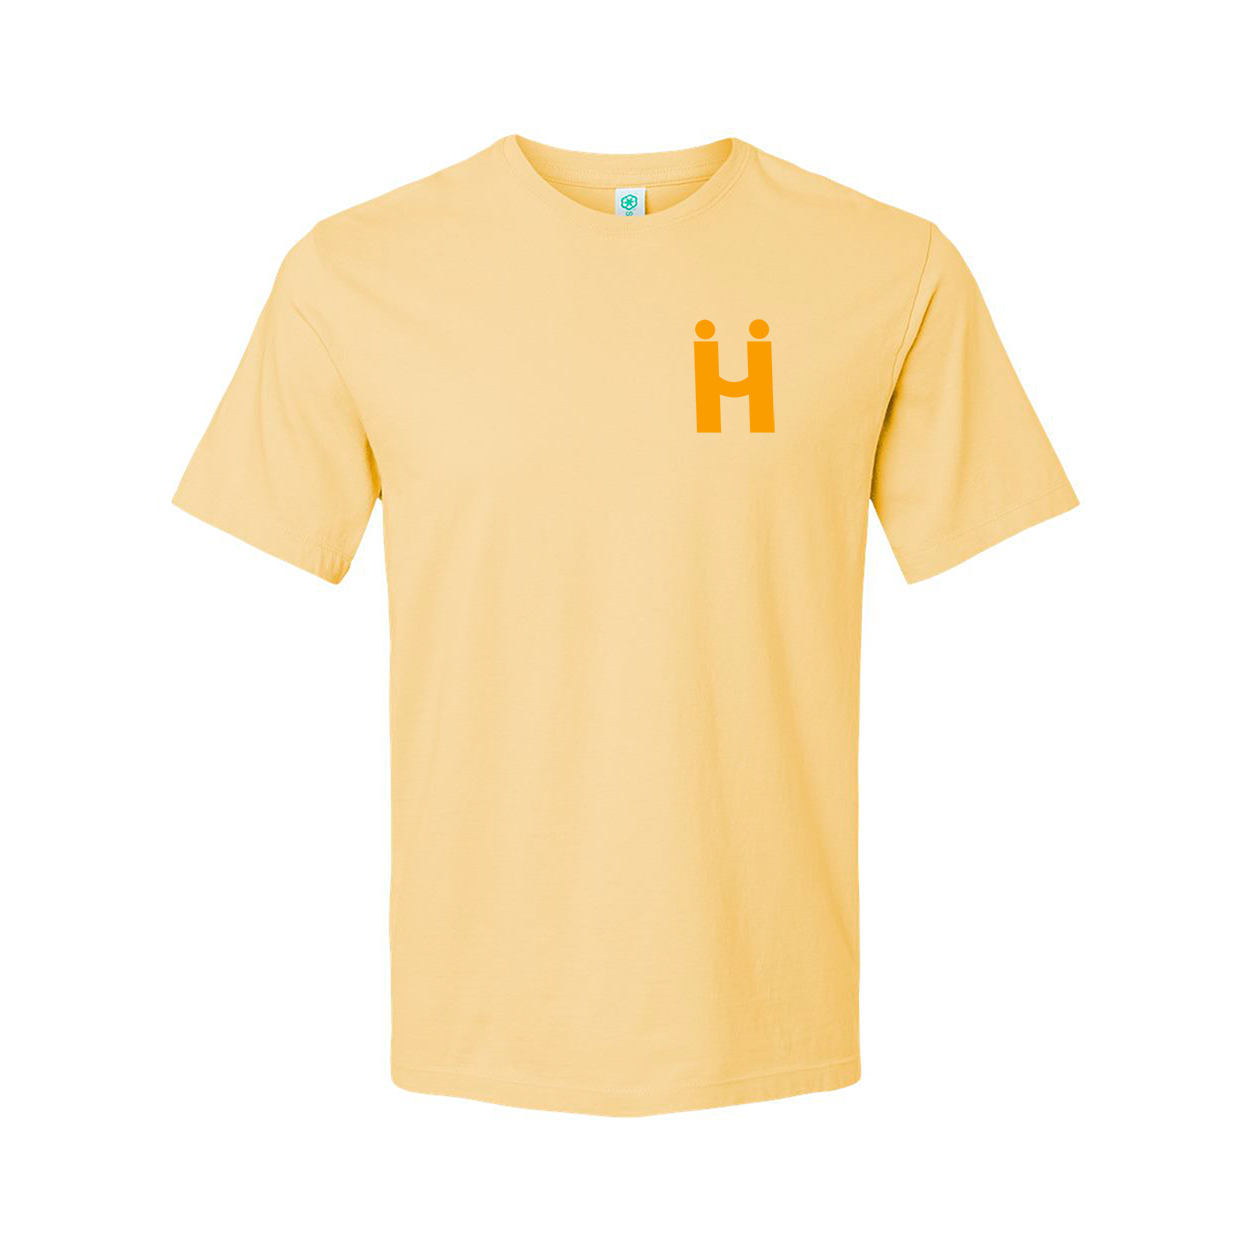 Hii Brand wheat tshirt yellow logo